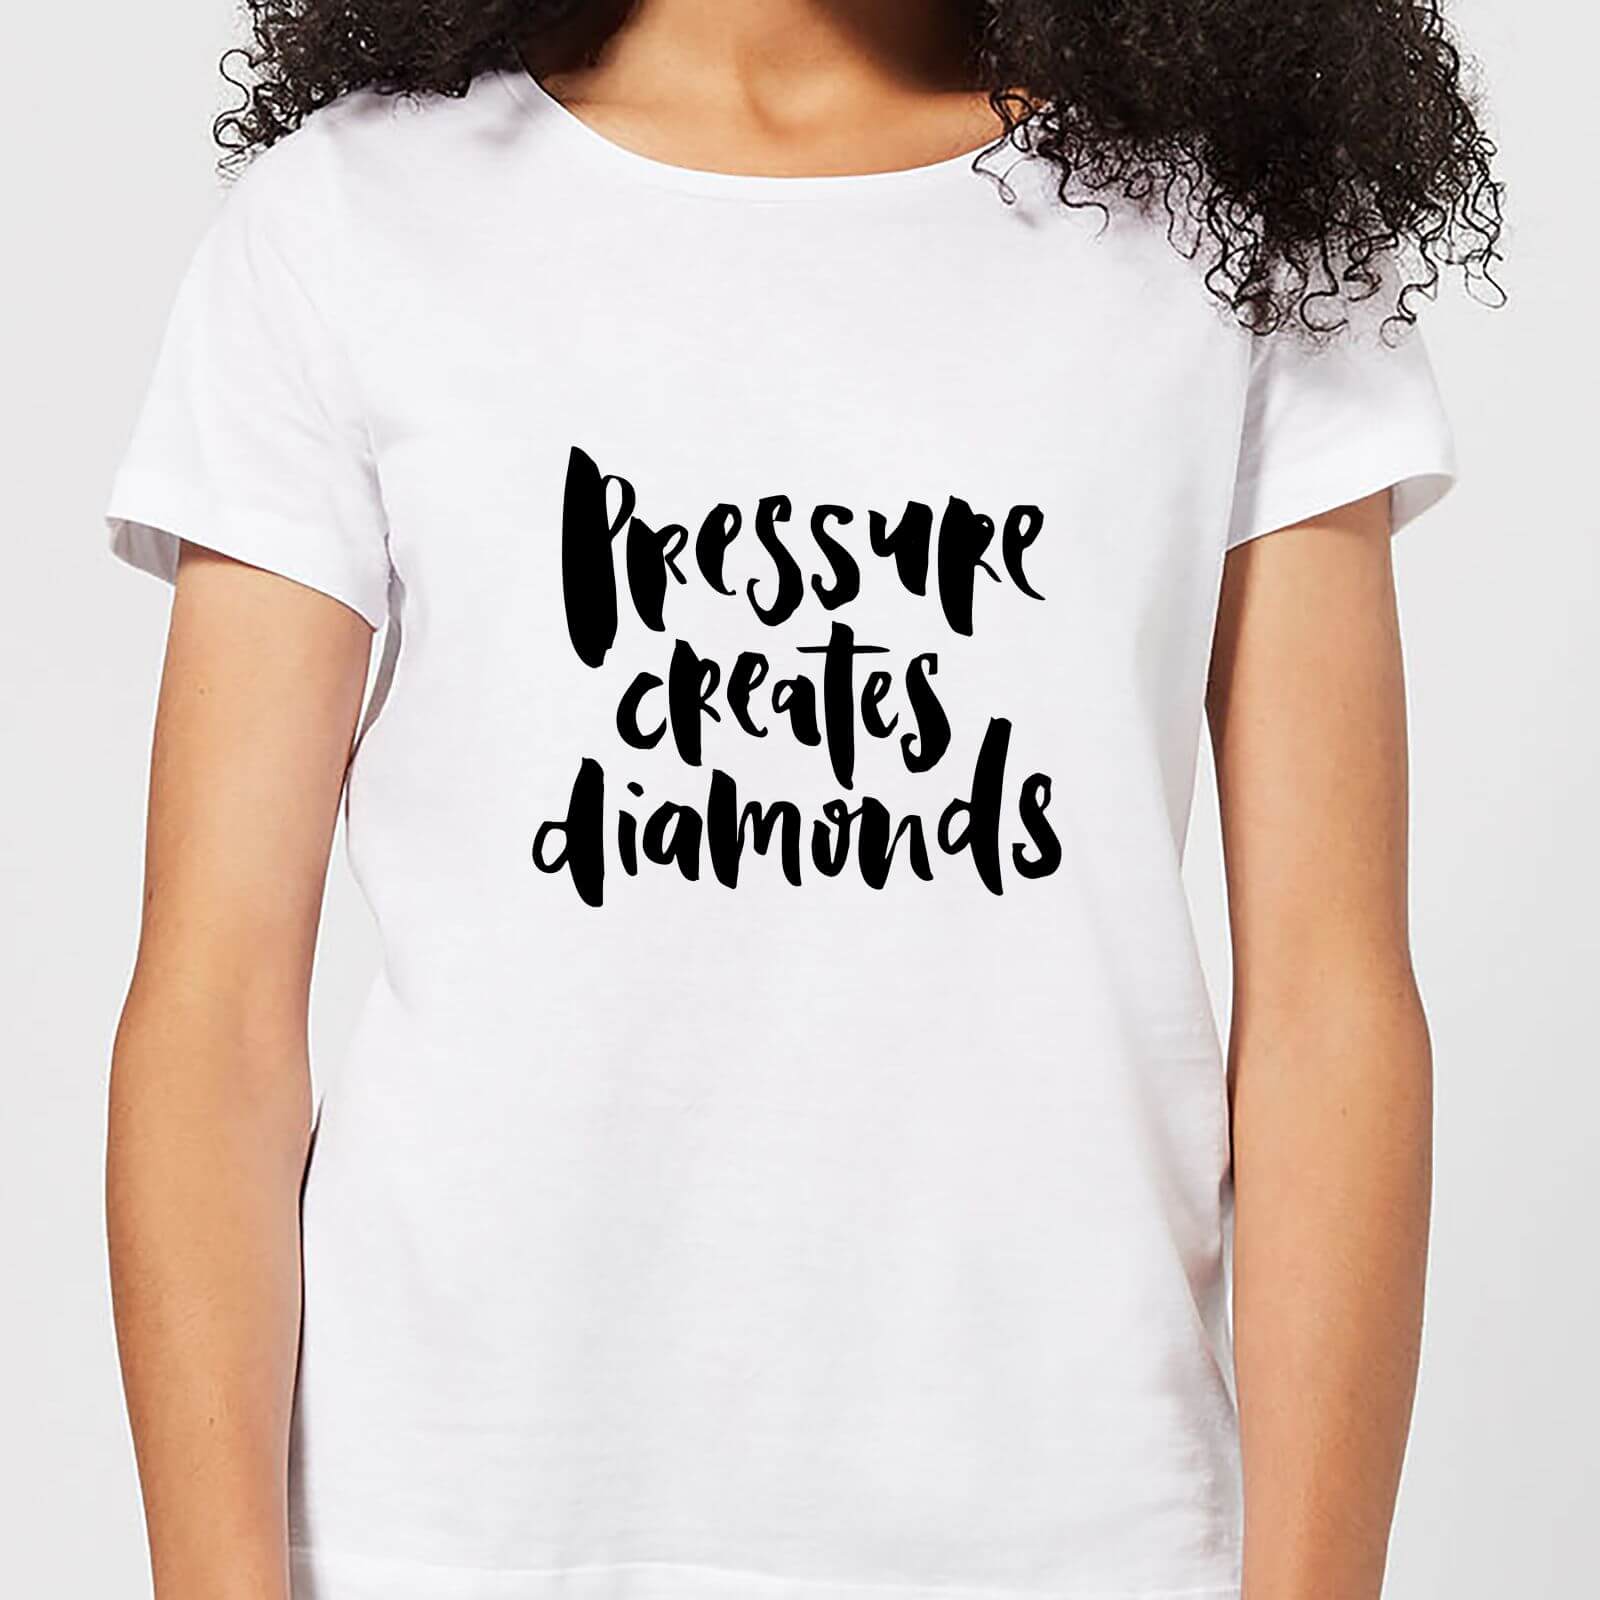 Pressure Creates Diamonds Women's T-Shirt - White - S - White